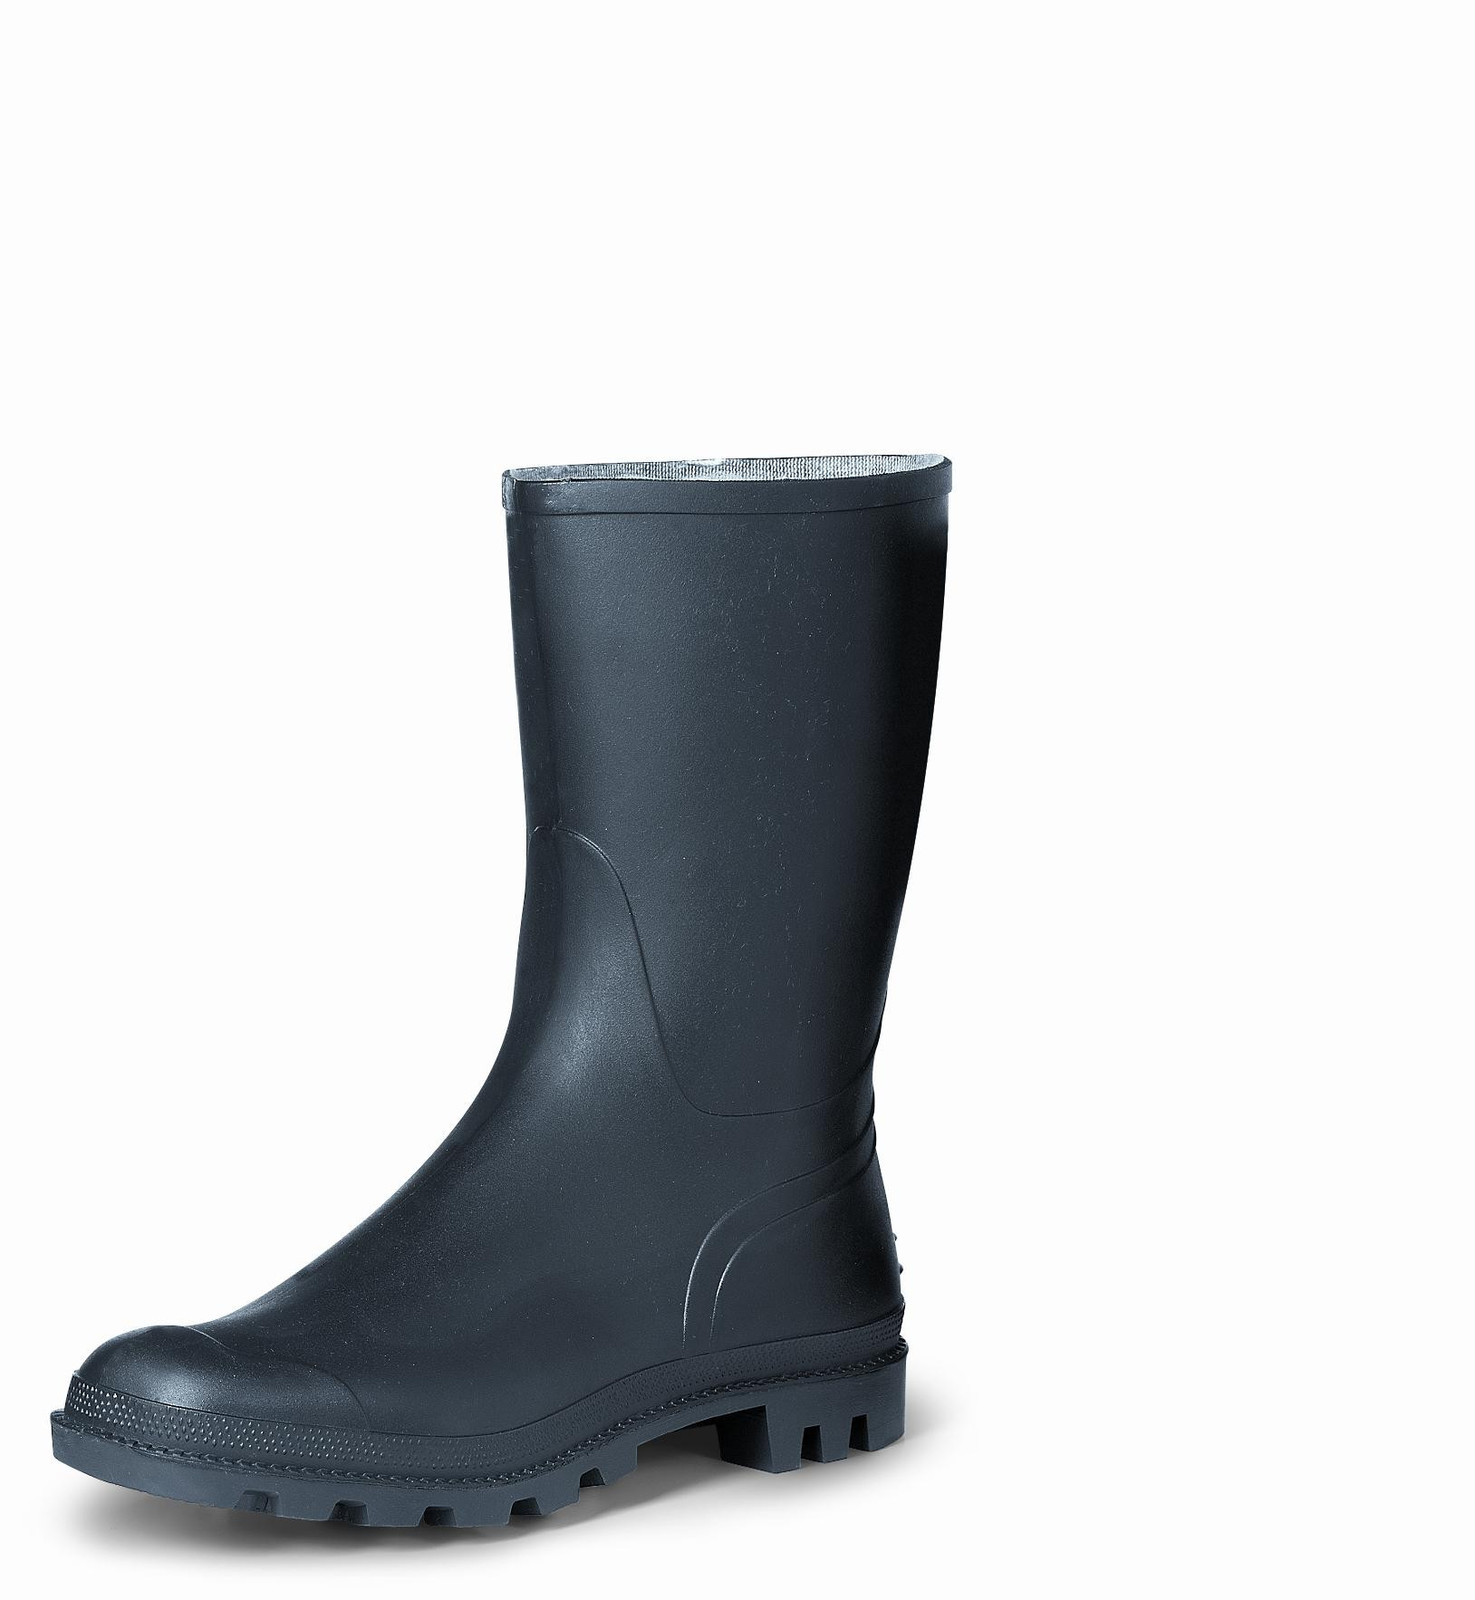 Gumáky Boots Troncheto PVC nízke - veľkosť: 36, farba: čierna